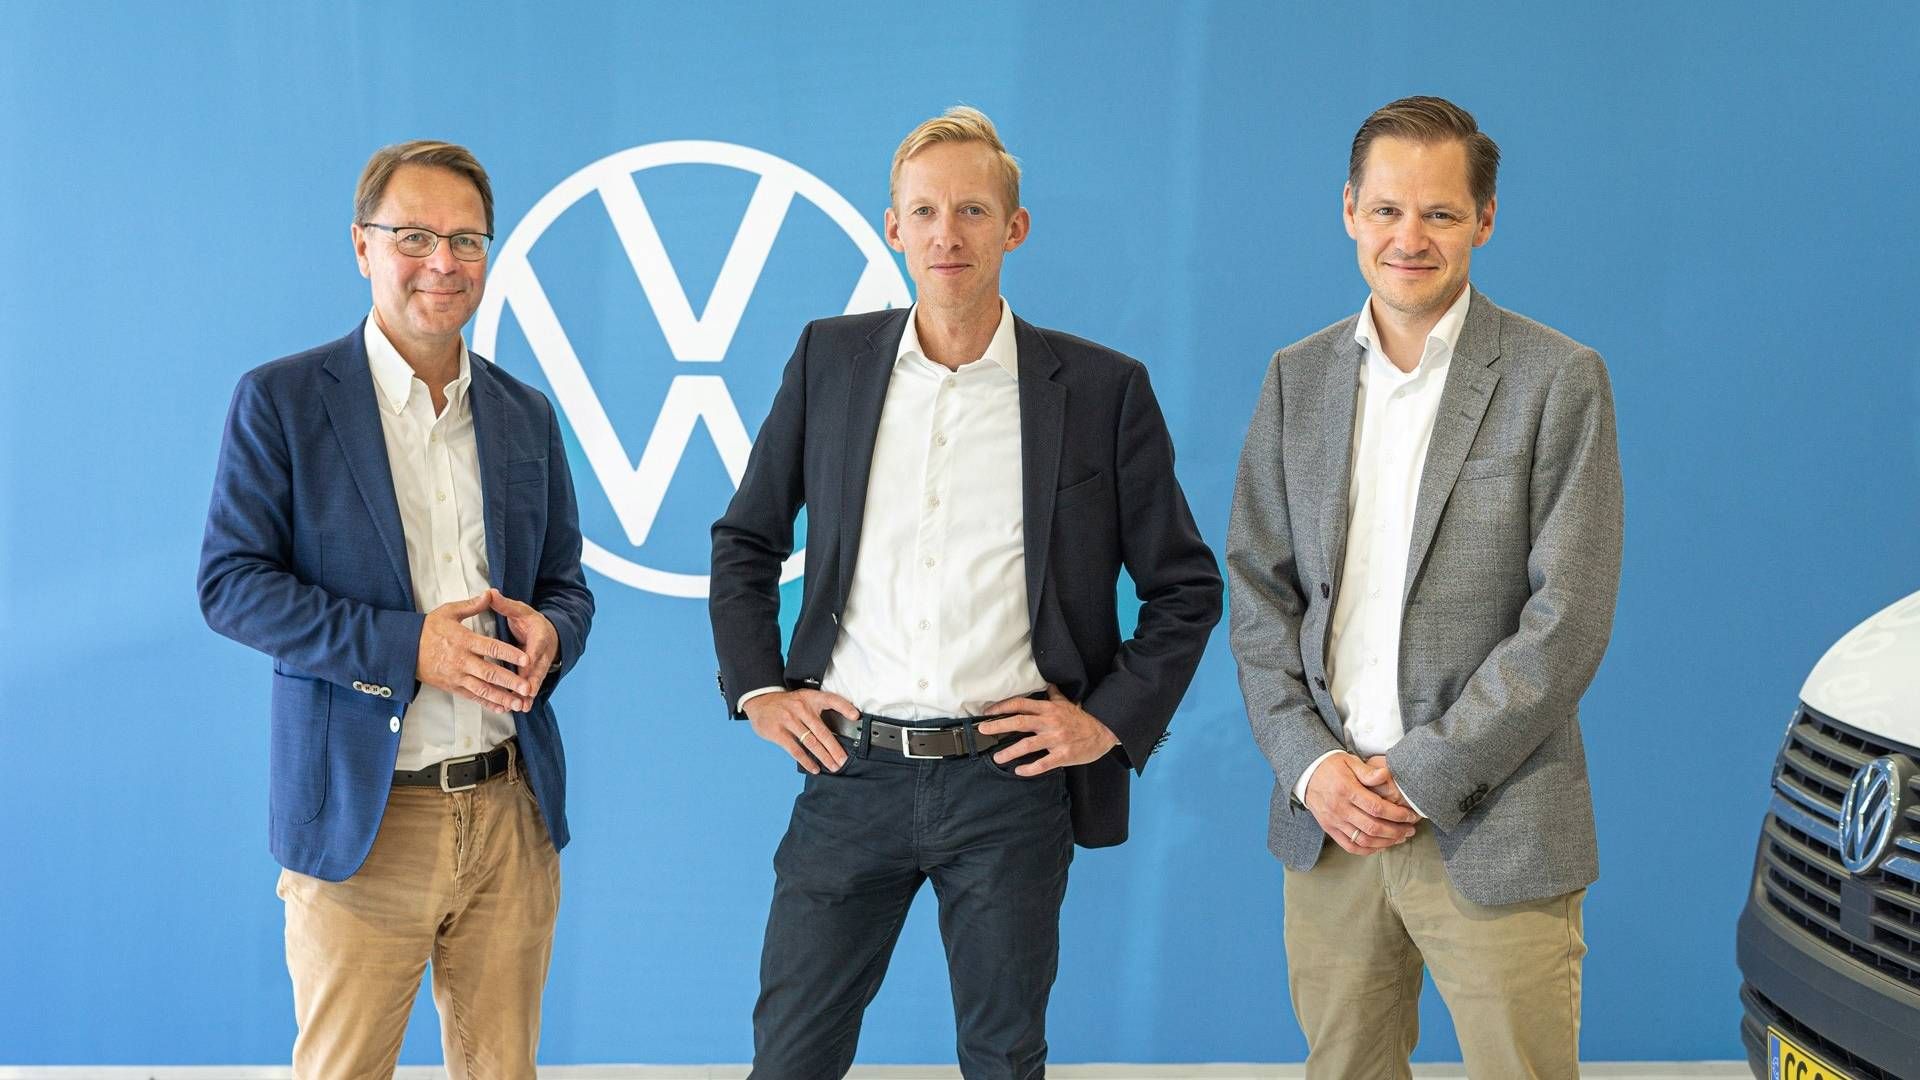 Adm. direktør i Abax, Morten Strand (t.v.), Mads Gregersen, adm. direktør i Connected Cars (i midten) og Ulrik Drejsig, adm. direktør i Semler Gruppen (t.h.). | Foto: PR / Semler